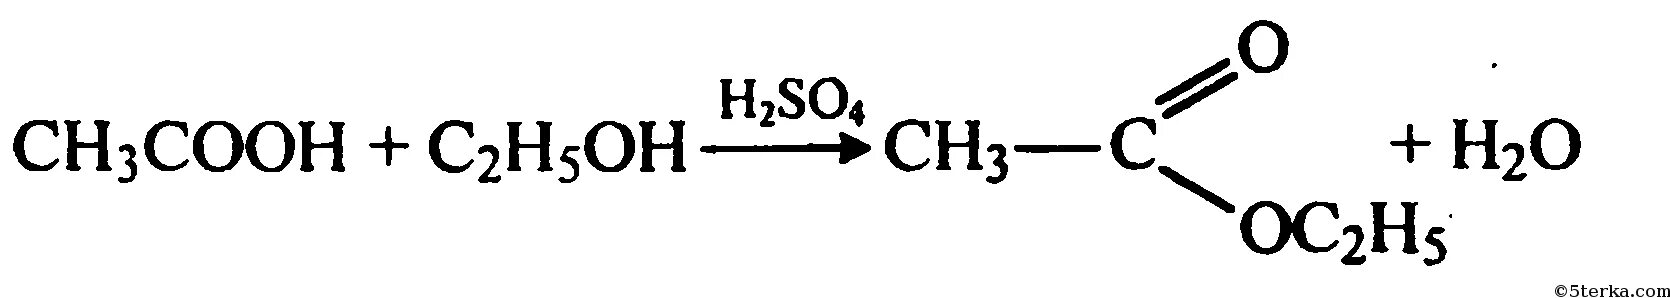 Cu2 oh 2co3. Окисление метанола на Медном катализаторе. Уксусный альдегид и гидроксид меди 2. Уксусный альдегид плюс гидроксид меди 2.